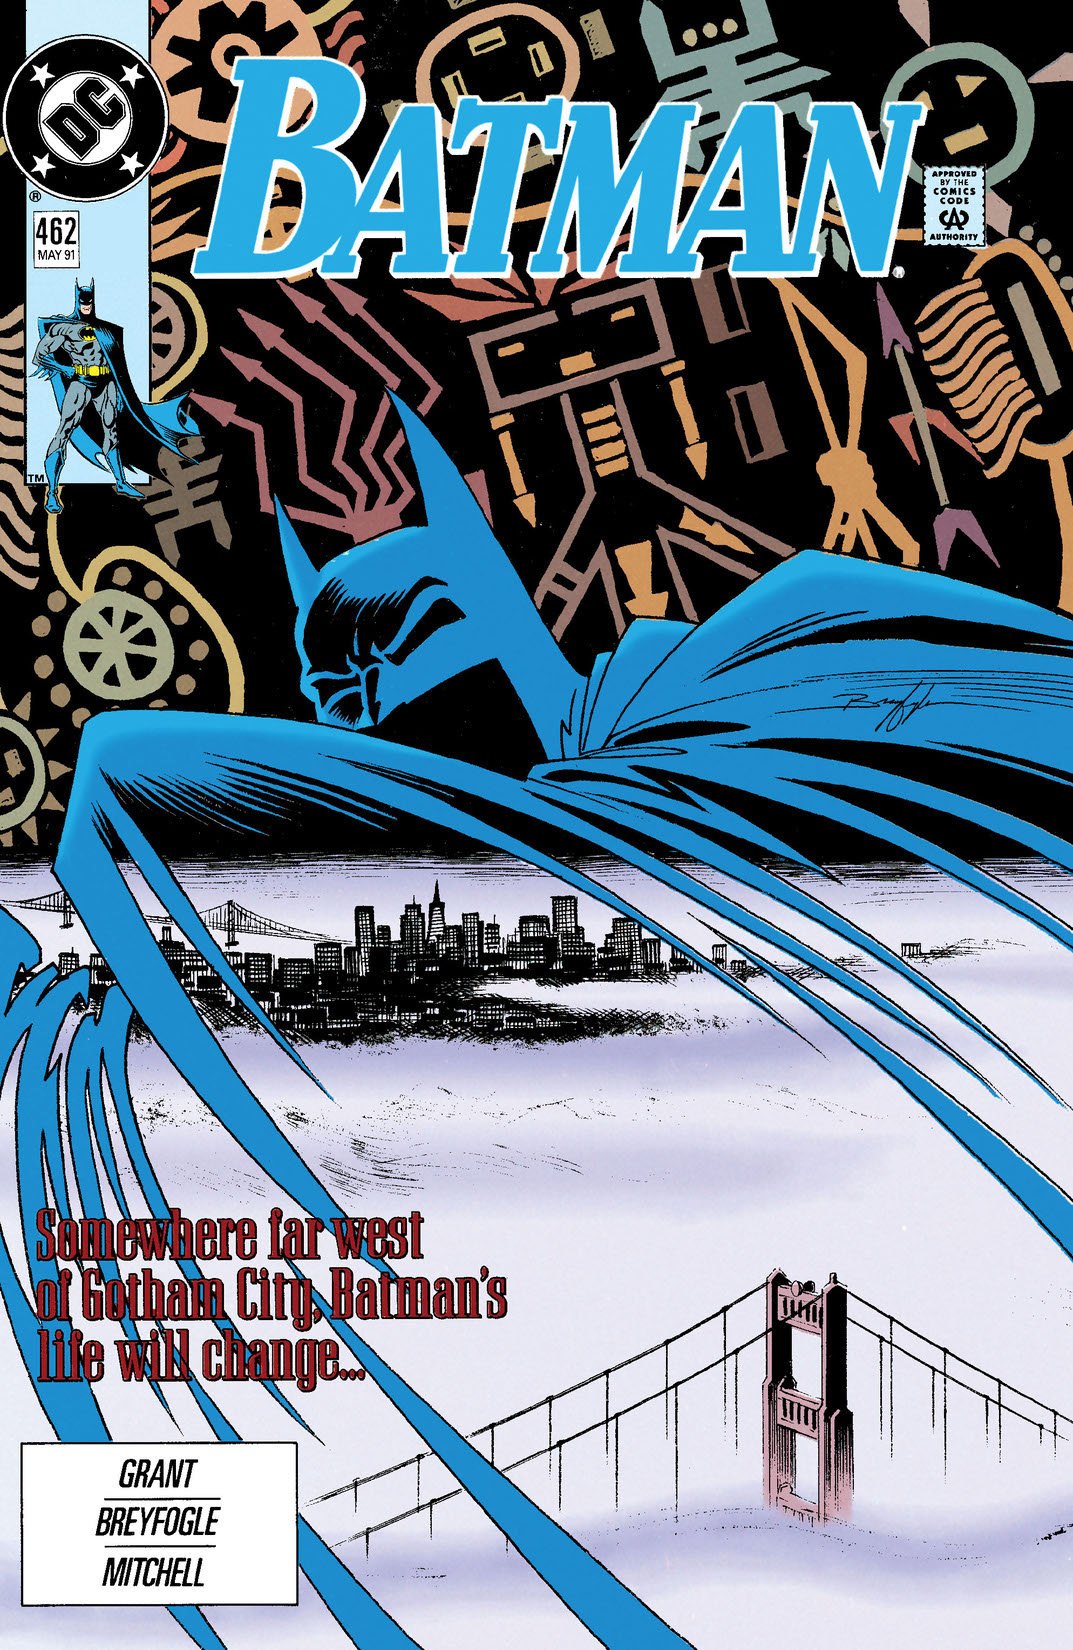 Batman (1940-) #462 preview images